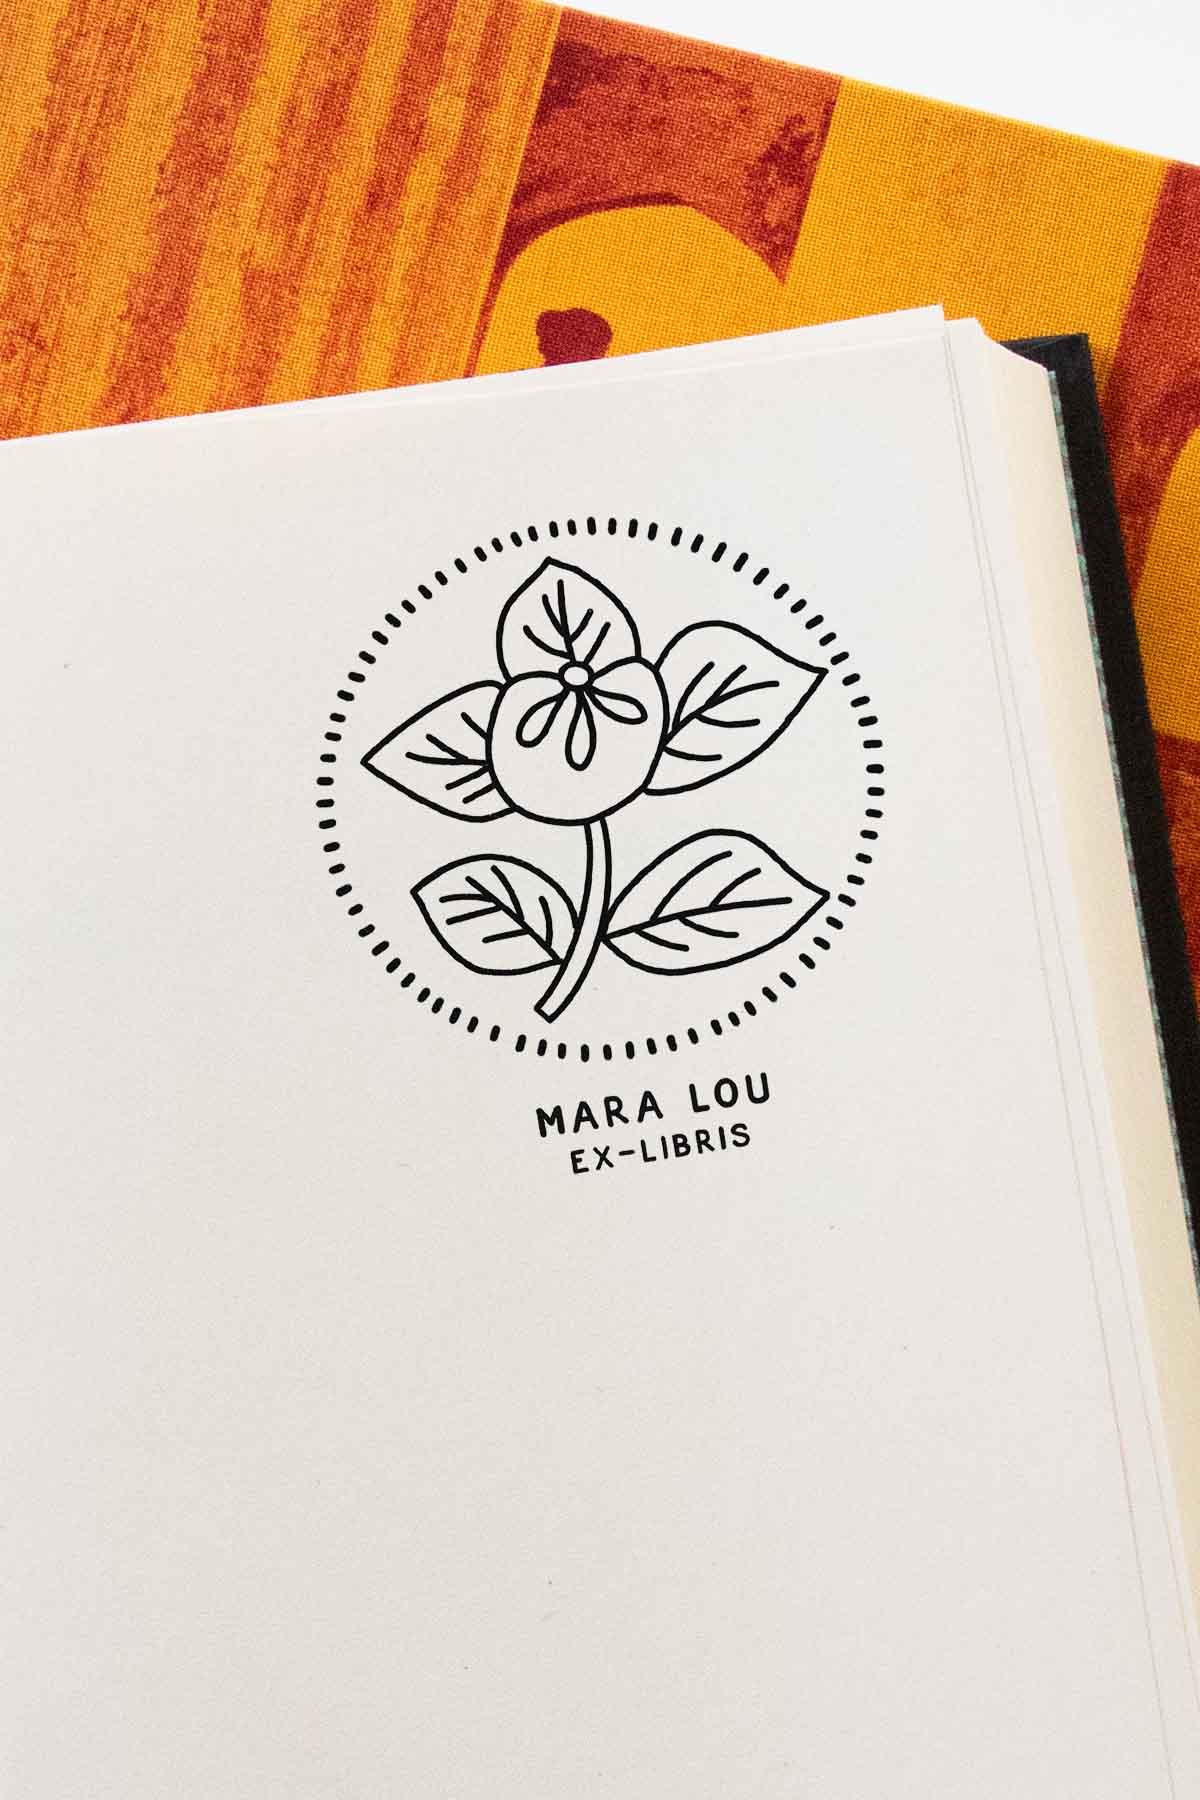 Portadilla de libro estampada con sello exlibris de una flor enmarcada en un círculo